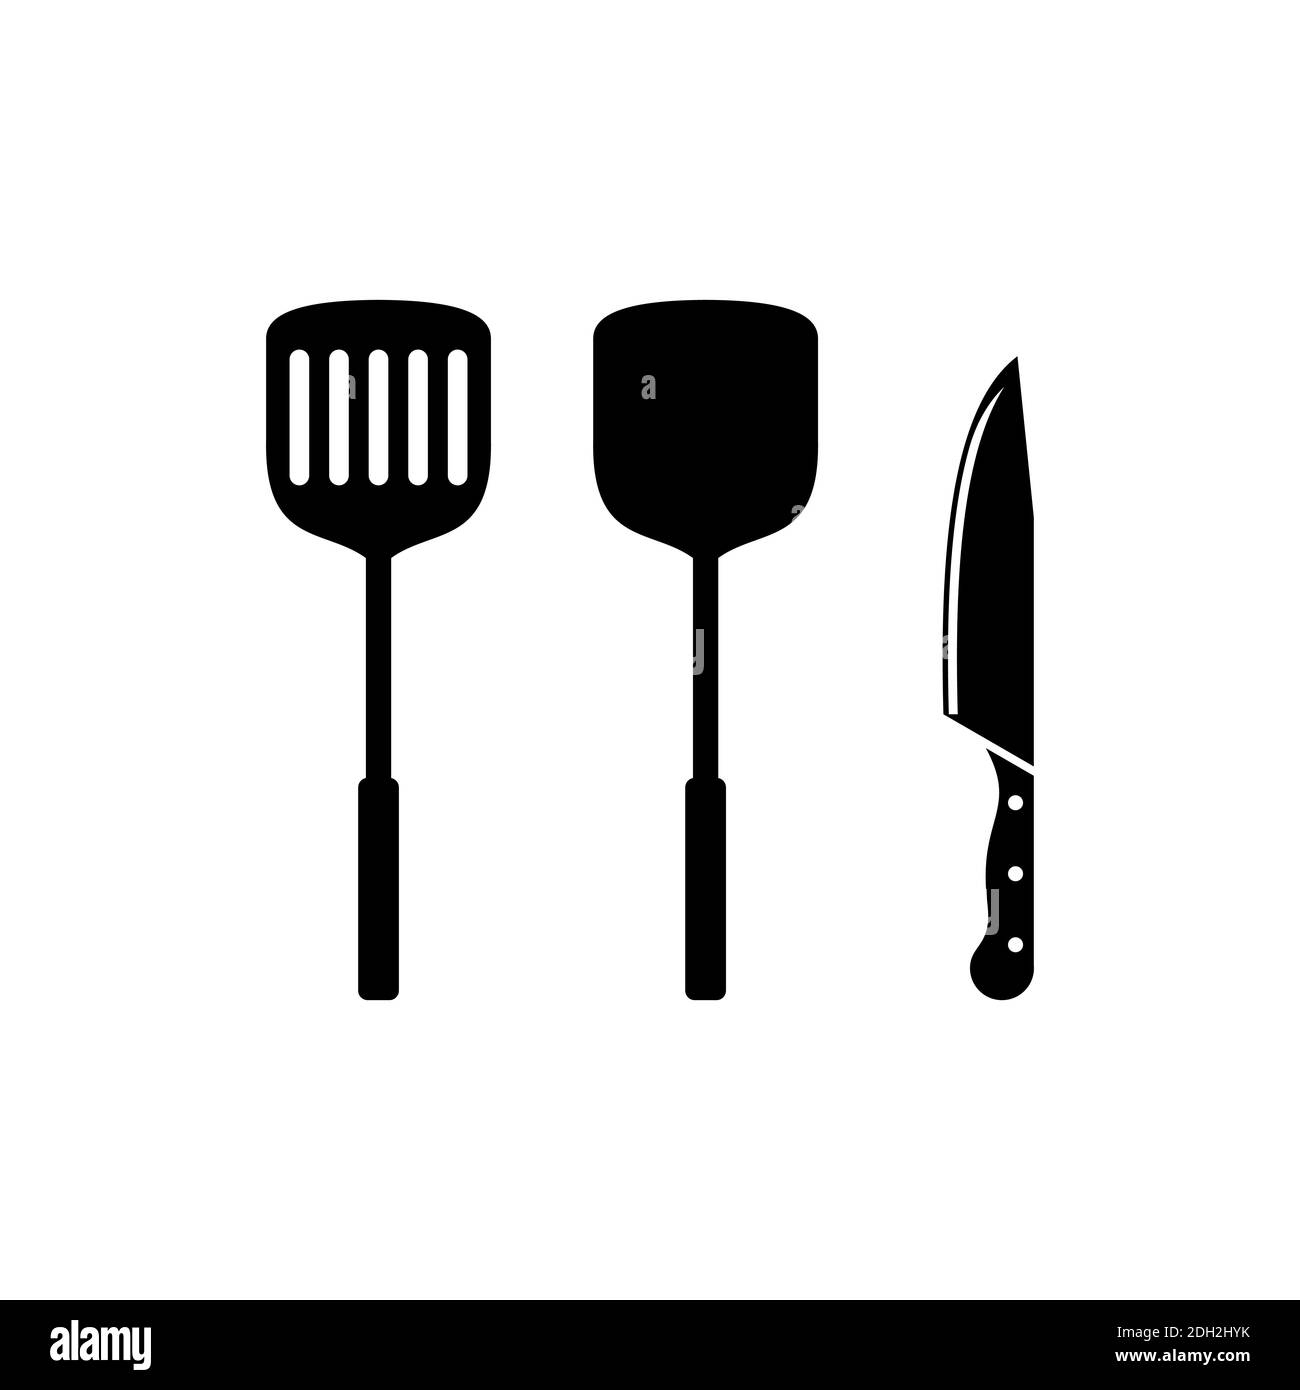 https://c8.alamy.com/compes/2dh2hyk/utensilios-de-cocina-icono-concepto-vector-diseno-concepto-2dh2hyk.jpg